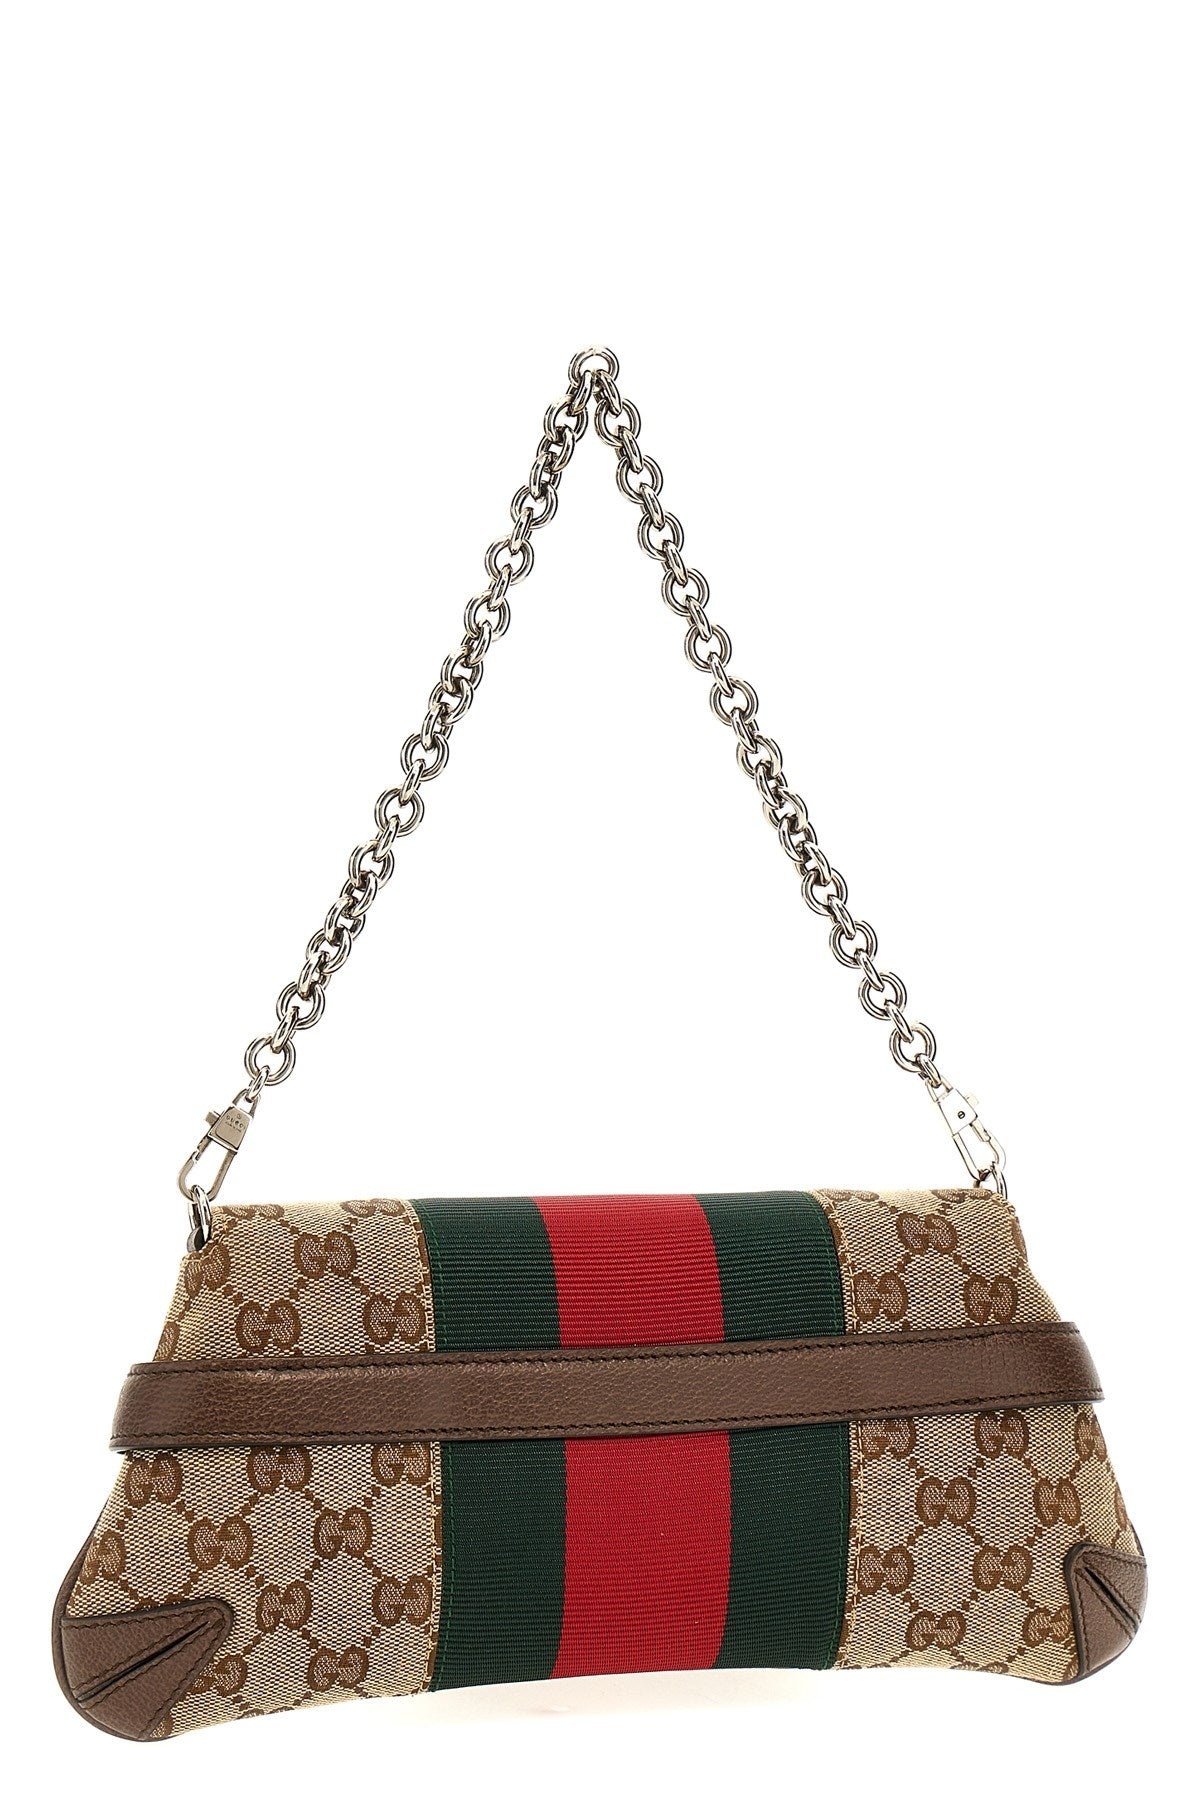 Gucci Women 'Horsebit Chain' Small Shoulder Bag - 3